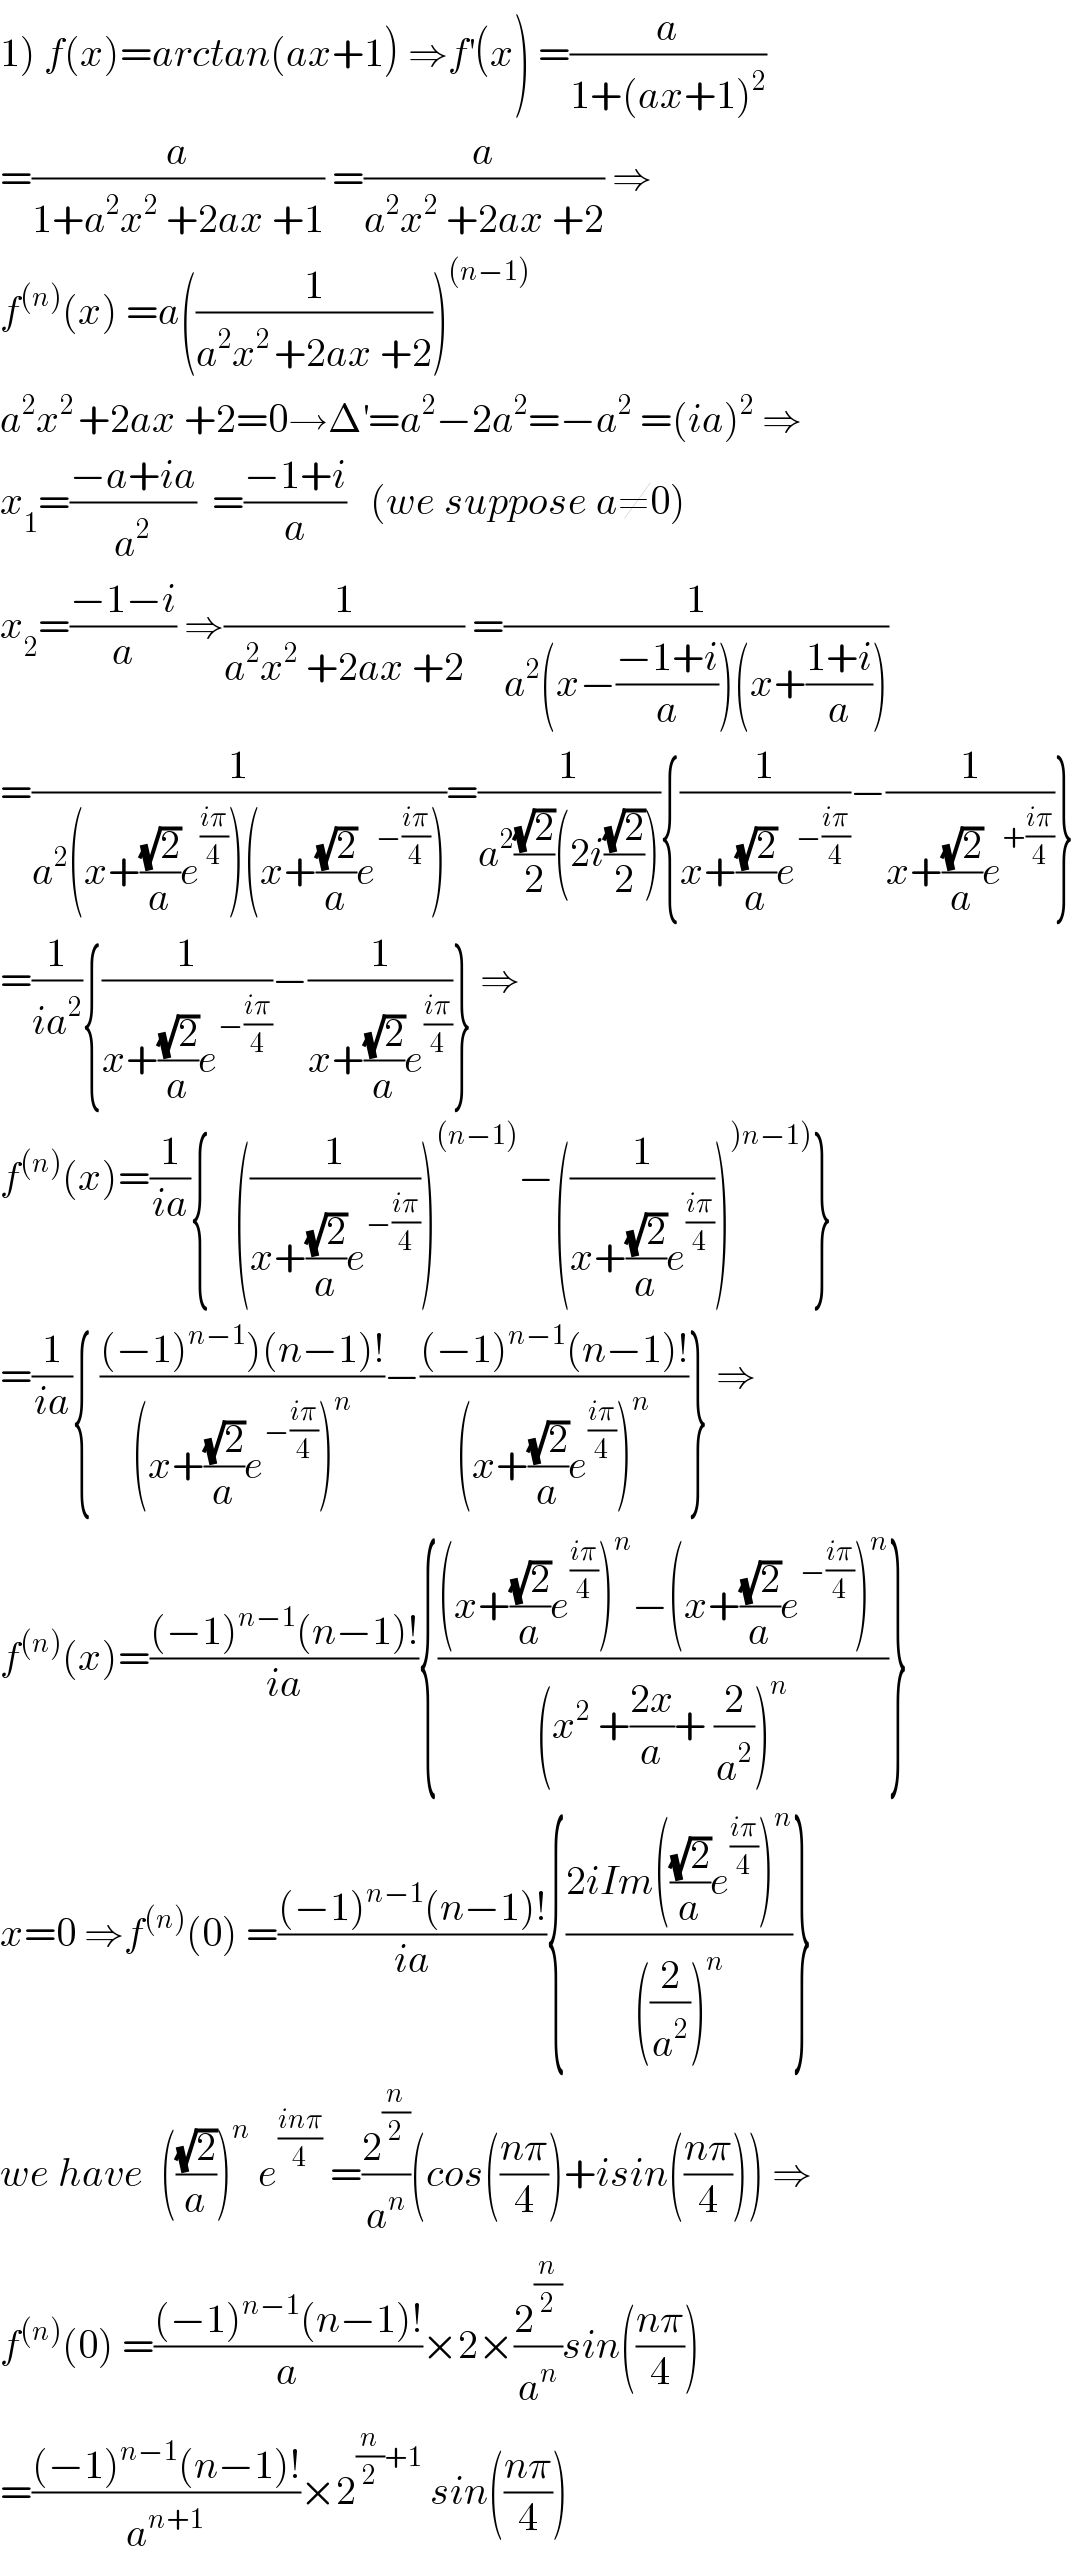 1) f(x)=arctan(ax+1) ⇒f^′ (x) =(a/(1+(ax+1)^2 ))  =(a/(1+a^2 x^2  +2ax +1)) =(a/(a^2 x^2  +2ax +2)) ⇒  f^((n)) (x) =a((1/(a^2 x^(2 ) +2ax +2)))^((n−1))   a^2 x^(2 ) +2ax +2=0→Δ^′ =a^2 −2a^2 =−a^2  =(ia)^2  ⇒  x_1 =((−a+ia)/a^2 )  =((−1+i)/a)   (we suppose a≠0)  x_2 =((−1−i)/a) ⇒(1/(a^2 x^2  +2ax +2)) =(1/(a^2 (x−((−1+i)/a))(x+((1+i)/a))))  =(1/(a^2 (x+((√2)/a)e^((iπ)/4) )(x+((√2)/a)e^(−((iπ)/4)) )))=(1/(a^2 ((√2)/2)(2i((√2)/2)))){(1/(x+((√2)/a)e^(−((iπ)/4)) ))−(1/(x+((√2)/a)e^(+((iπ)/4)) ))}  =(1/(ia^2 )){(1/(x+((√2)/a)e^(−((iπ)/4)) ))−(1/(x+((√2)/a)e^((iπ)/4) ))} ⇒  f^((n)) (x)=(1/(ia)){   ((1/(x+((√2)/a)e^(−((iπ)/4)) )))^((n−1)) −((1/(x+((√2)/a)e^((iπ)/4) )))^()n−1)) }  =(1/(ia)){ (((−1)^(n−1) )(n−1)!)/((x+((√2)/a)e^(−((iπ)/4)) )^n ))−(((−1)^(n−1) (n−1)!)/((x+((√2)/a)e^((iπ)/4) )^n ))} ⇒  f^((n)) (x)=(((−1)^(n−1) (n−1)!)/(ia)){(((x+((√2)/a)e^((iπ)/4) )^n −(x+((√2)/a)e^(−((iπ)/4)) )^n )/((x^2  +((2x)/a)+ (2/a^2 ))^n ))}  x=0 ⇒f^((n)) (0) =(((−1)^(n−1) (n−1)!)/(ia)){((2iIm(((√2)/a)e^((iπ)/4) )^n )/(((2/a^2 ))^n ))}  we have  (((√2)/a))^n  e^((inπ)/4)  =(2^(n/2) /a^n )(cos(((nπ)/4))+isin(((nπ)/4))) ⇒  f^((n)) (0) =(((−1)^(n−1) (n−1)!)/a)×2×(2^(n/2) /a^n )sin(((nπ)/4))  =(((−1)^(n−1) (n−1)!)/a^(n+1) )×2^((n/2)+1)  sin(((nπ)/4))  